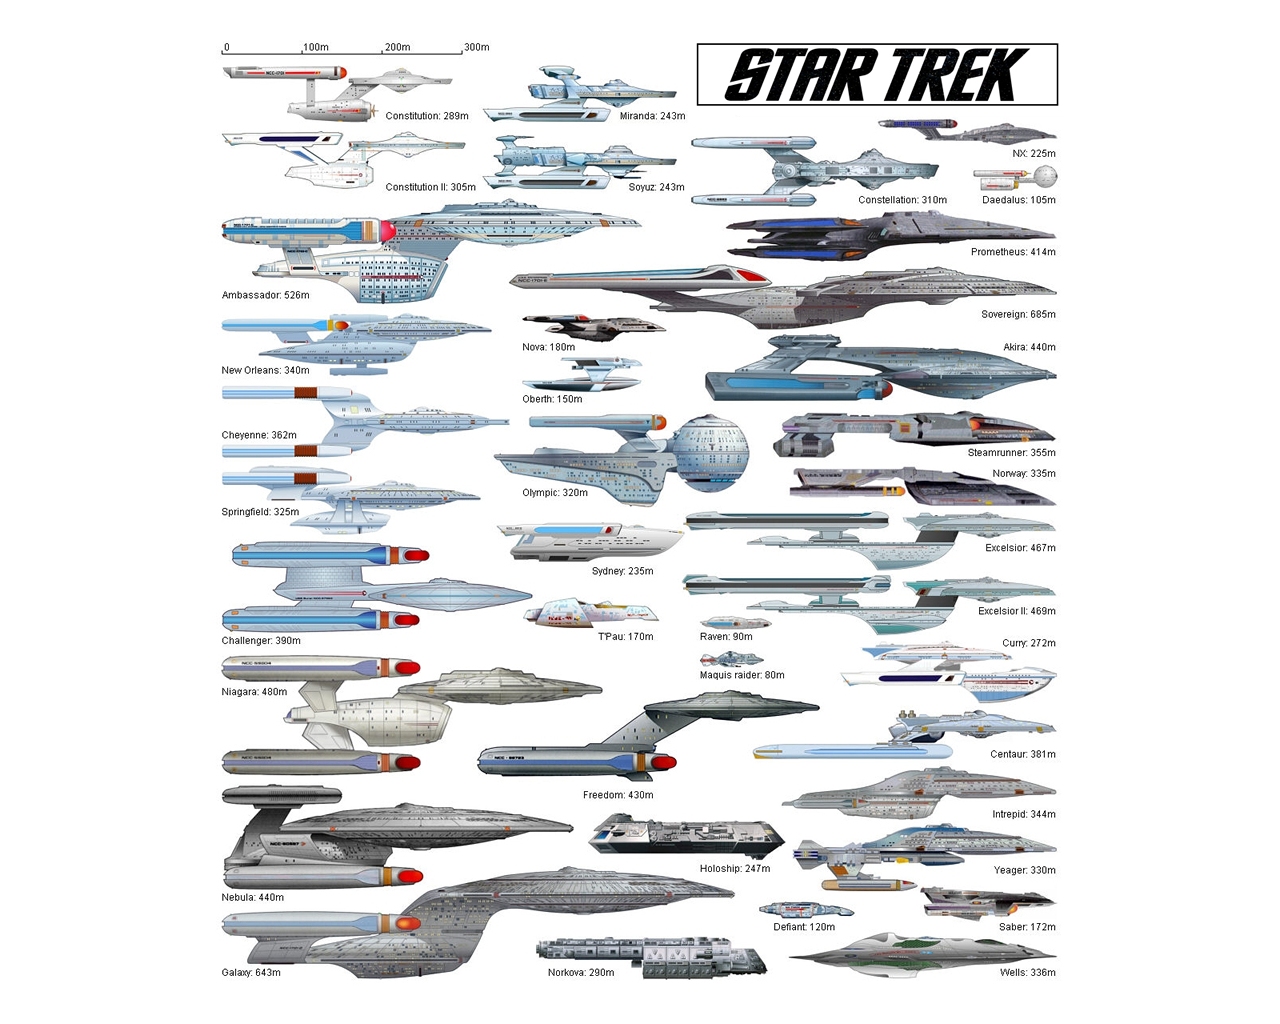 "Star Trek" desktop wallpaper number 8 - Starfleet's Ships of the Line #2 (1280 x 1024 pixels)